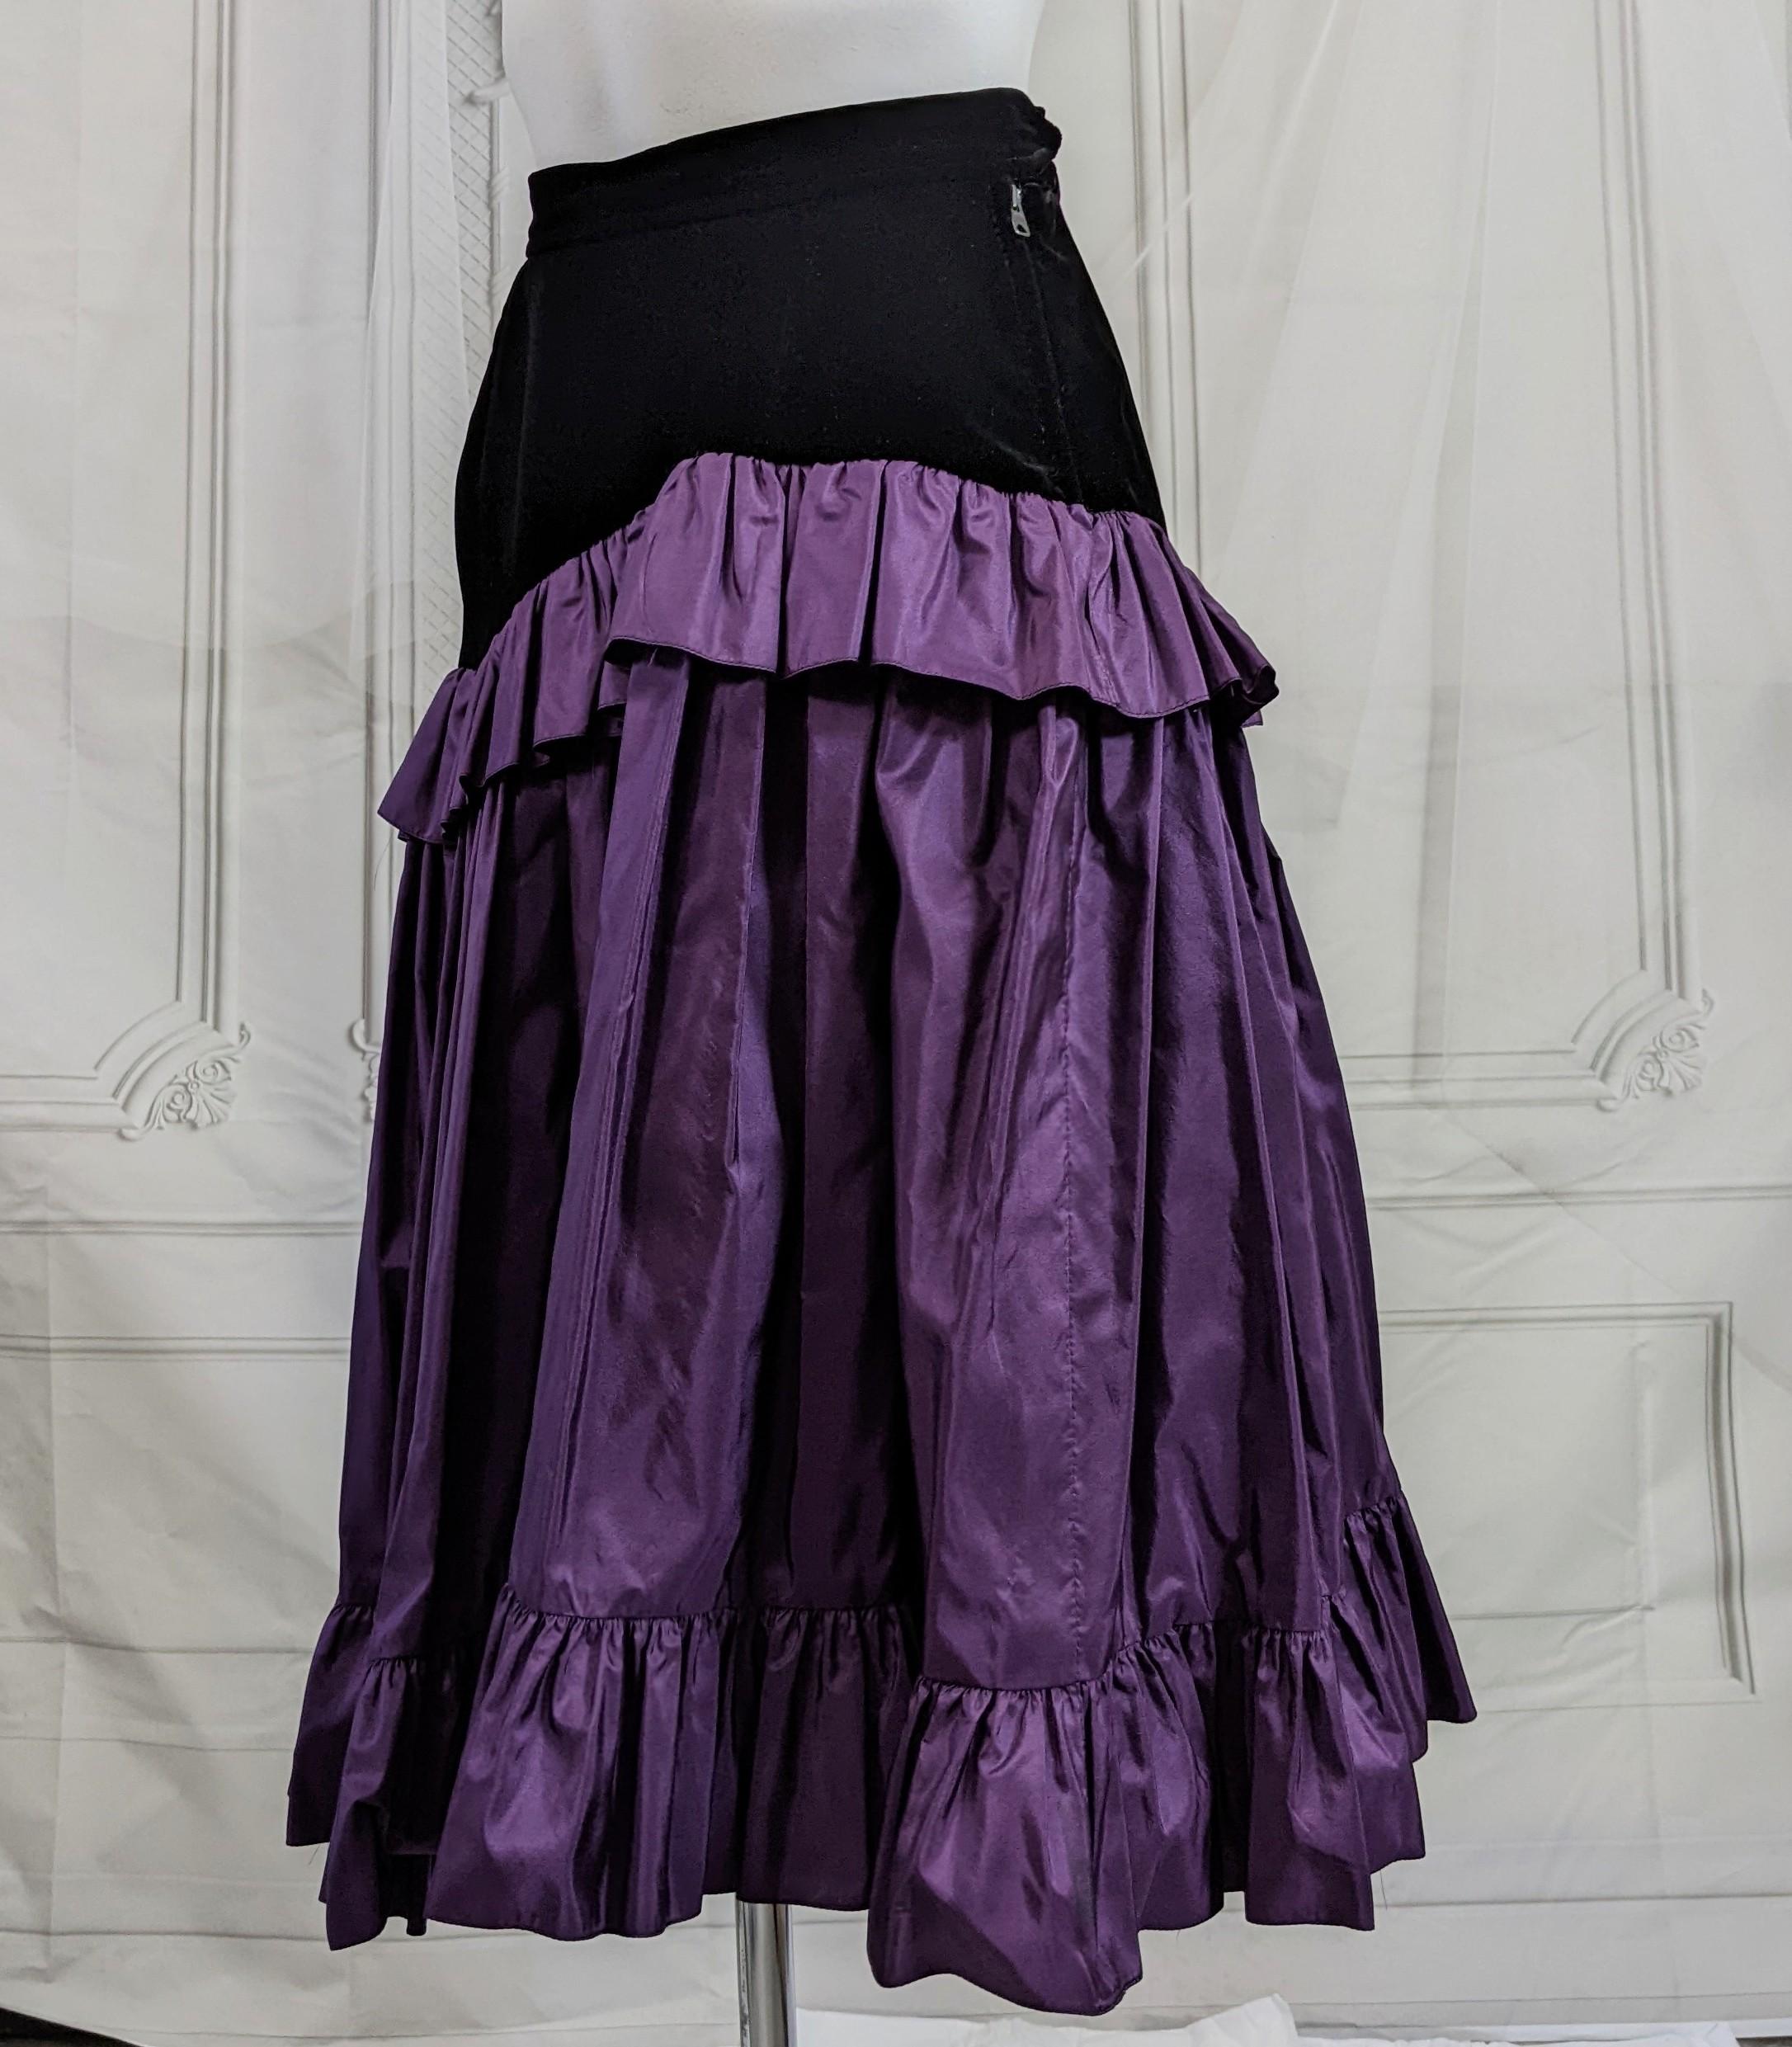 Women's or Men's Yves Saint Laurent Velvet and Taffeta Skirt, Russian Collection